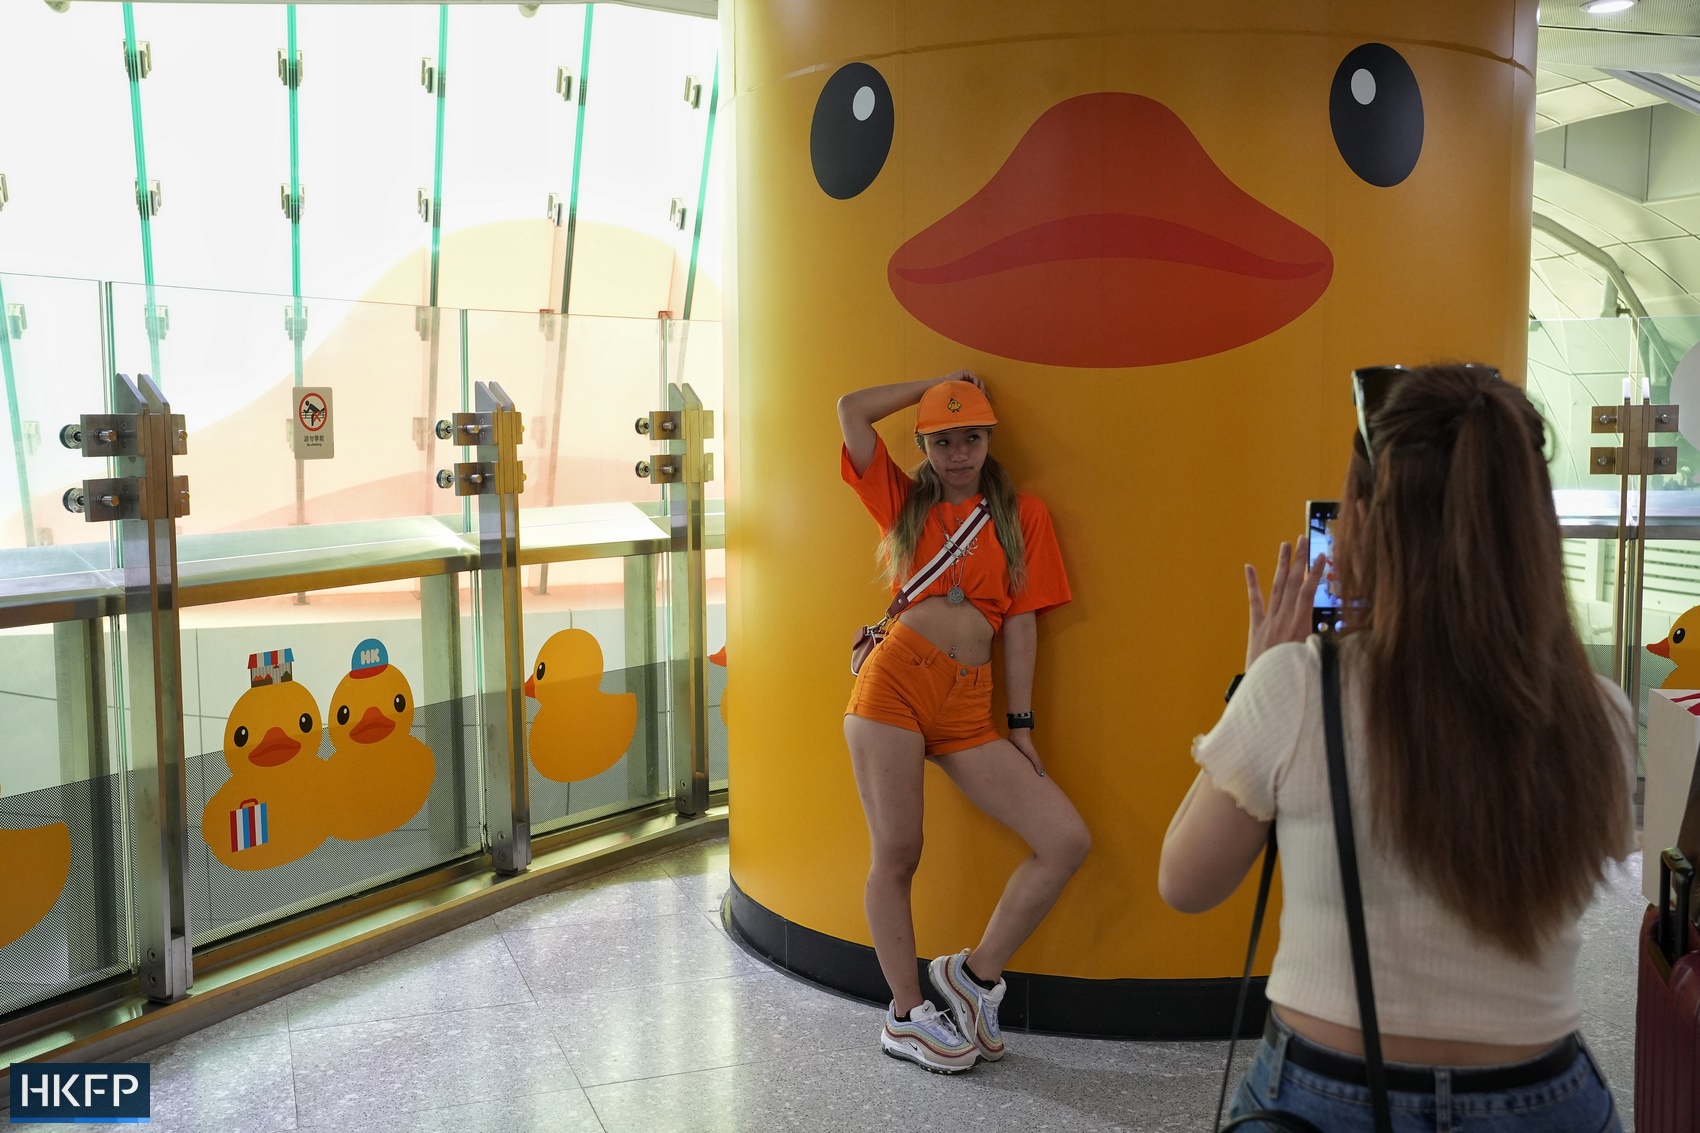 MTR Florentijn Hofman's rubber duck